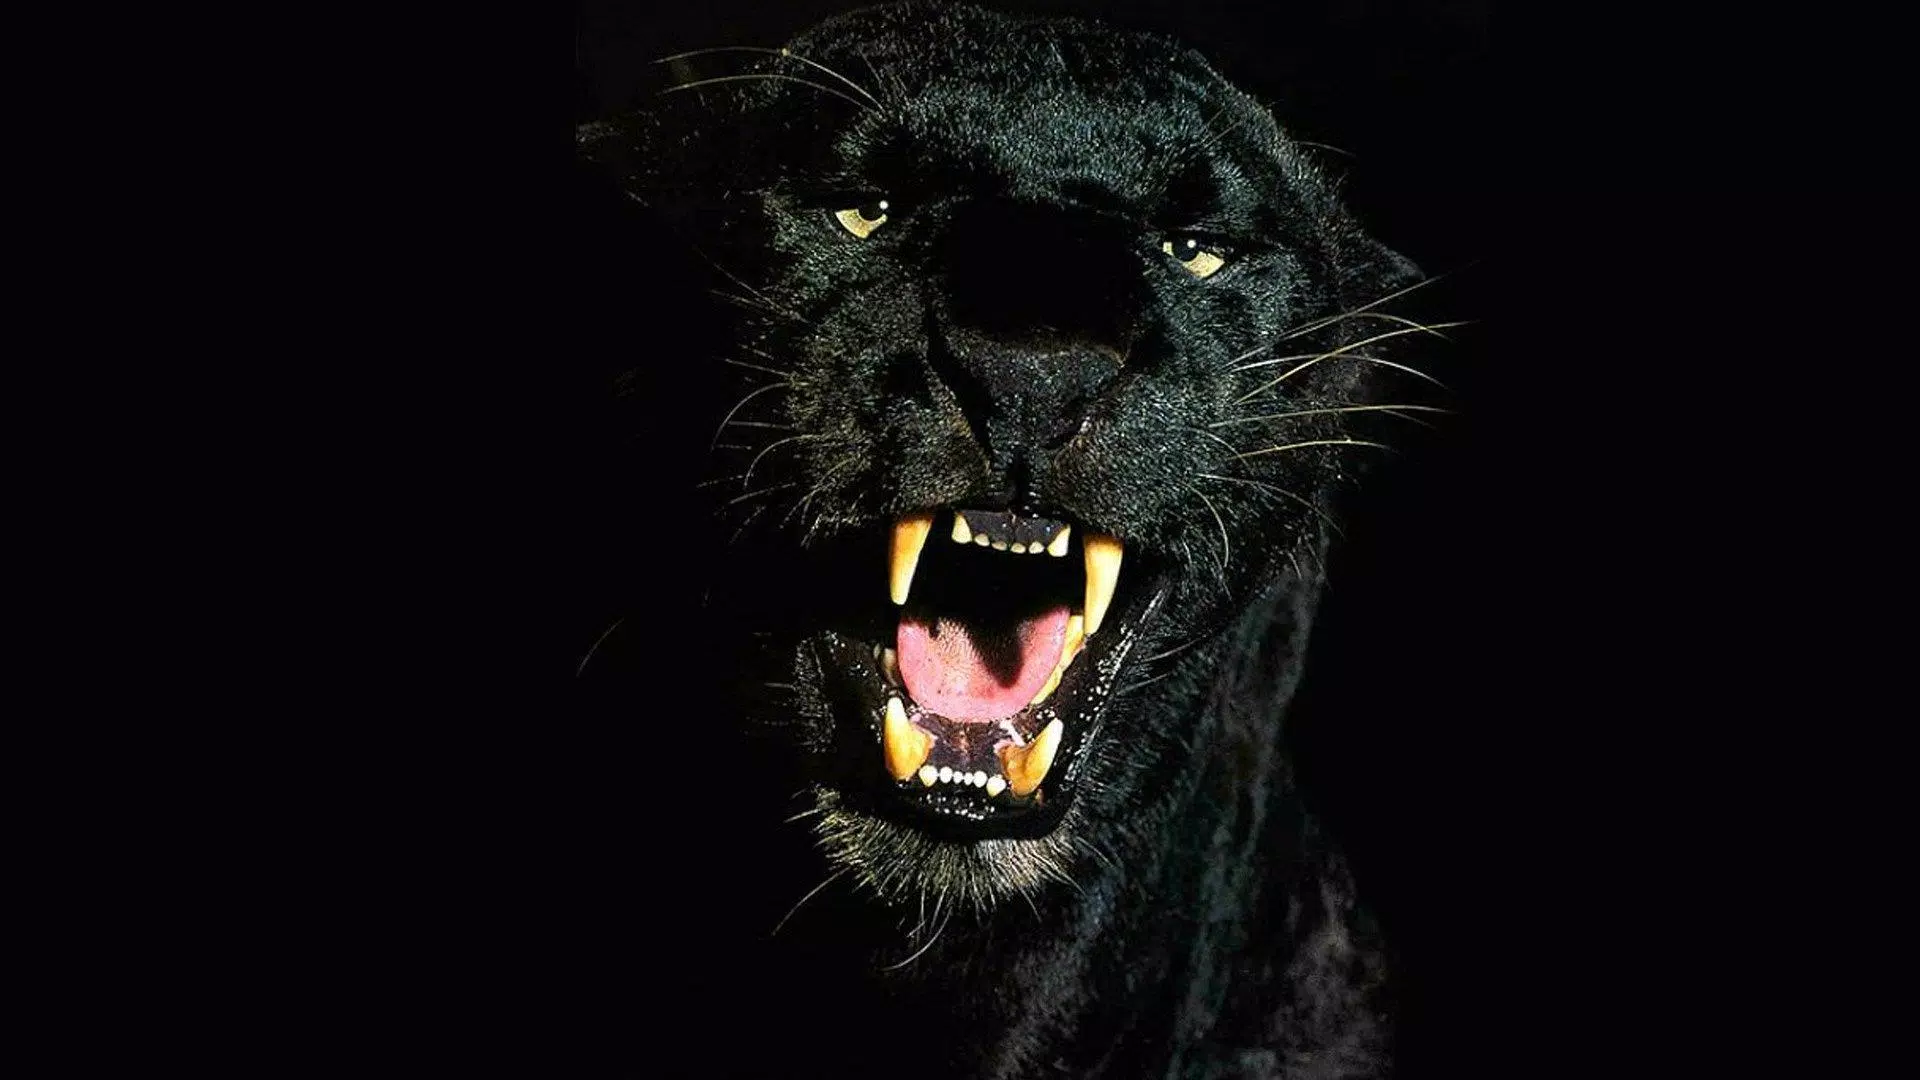 Black Panther Animal wallpaper: Con báo đen luôn toát lên vẻ bí ẩn và uy nghi trên màn hình thiết bị điện tử của bạn. Hãy thỏa sức khám phá hình nền Black Panther Animal độc đáo và cá tính, tạo cho thiết bị của bạn vẻ ngoài đầy sức hút.